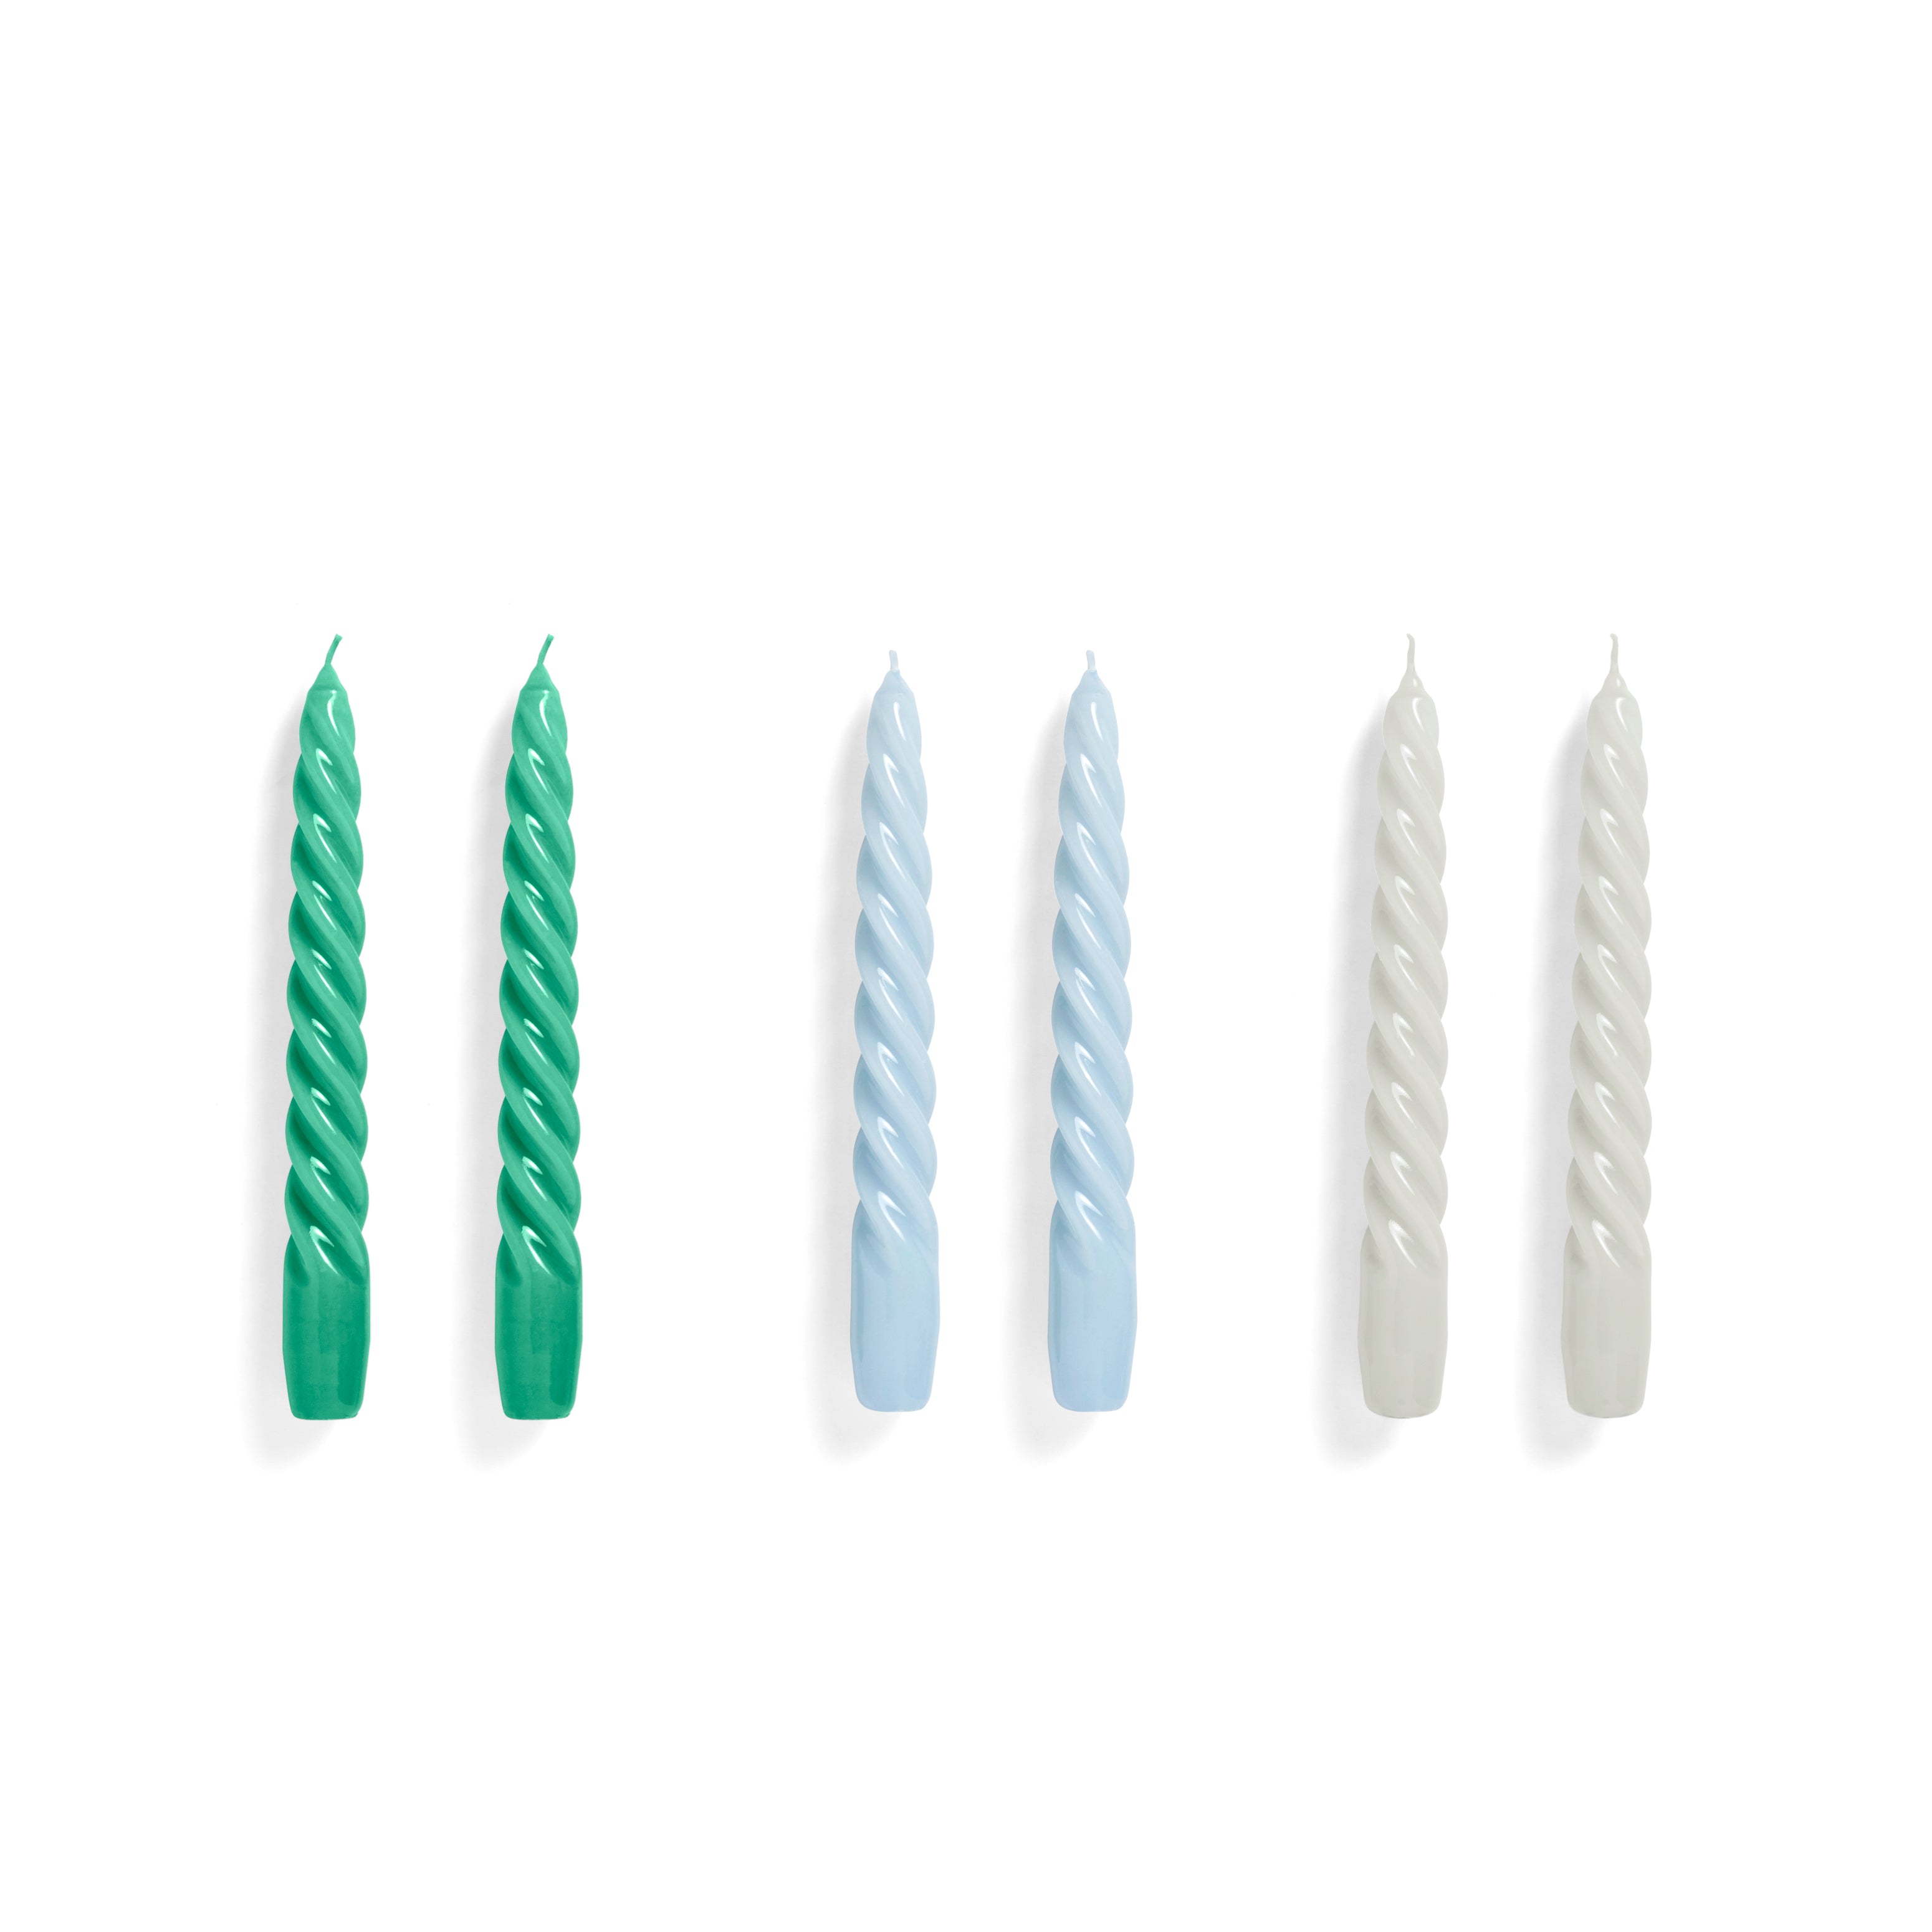 Twist Candles Set of 6 Green, Light blue, Light gray